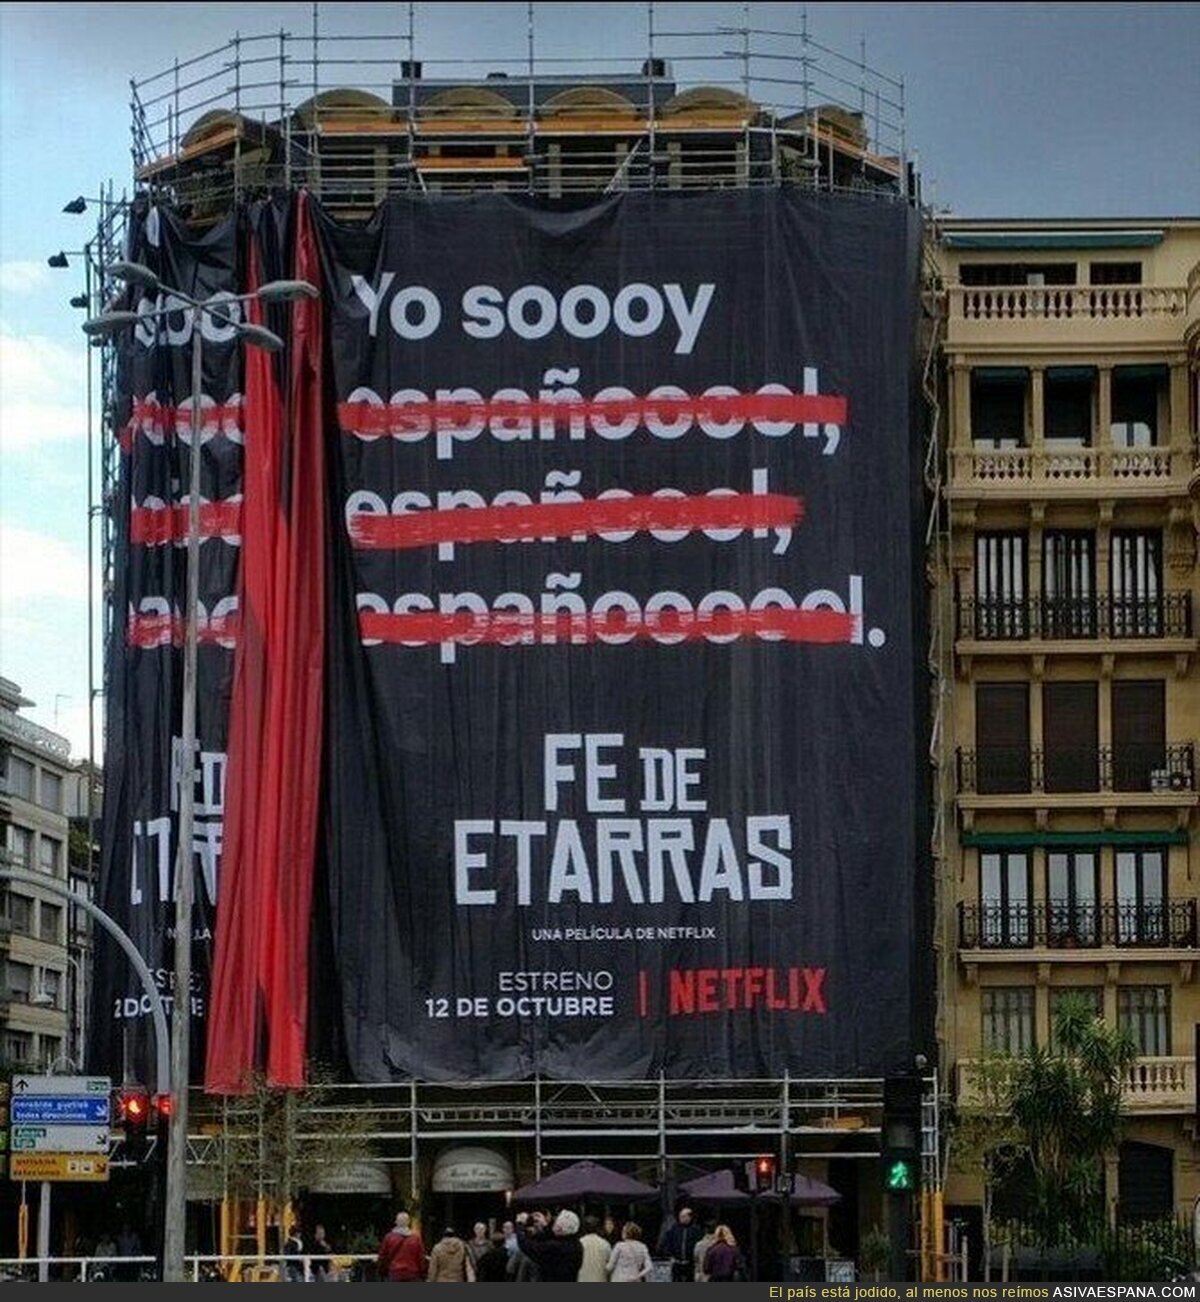 La polémica promoción de esta película de Netflix en el País Vasco